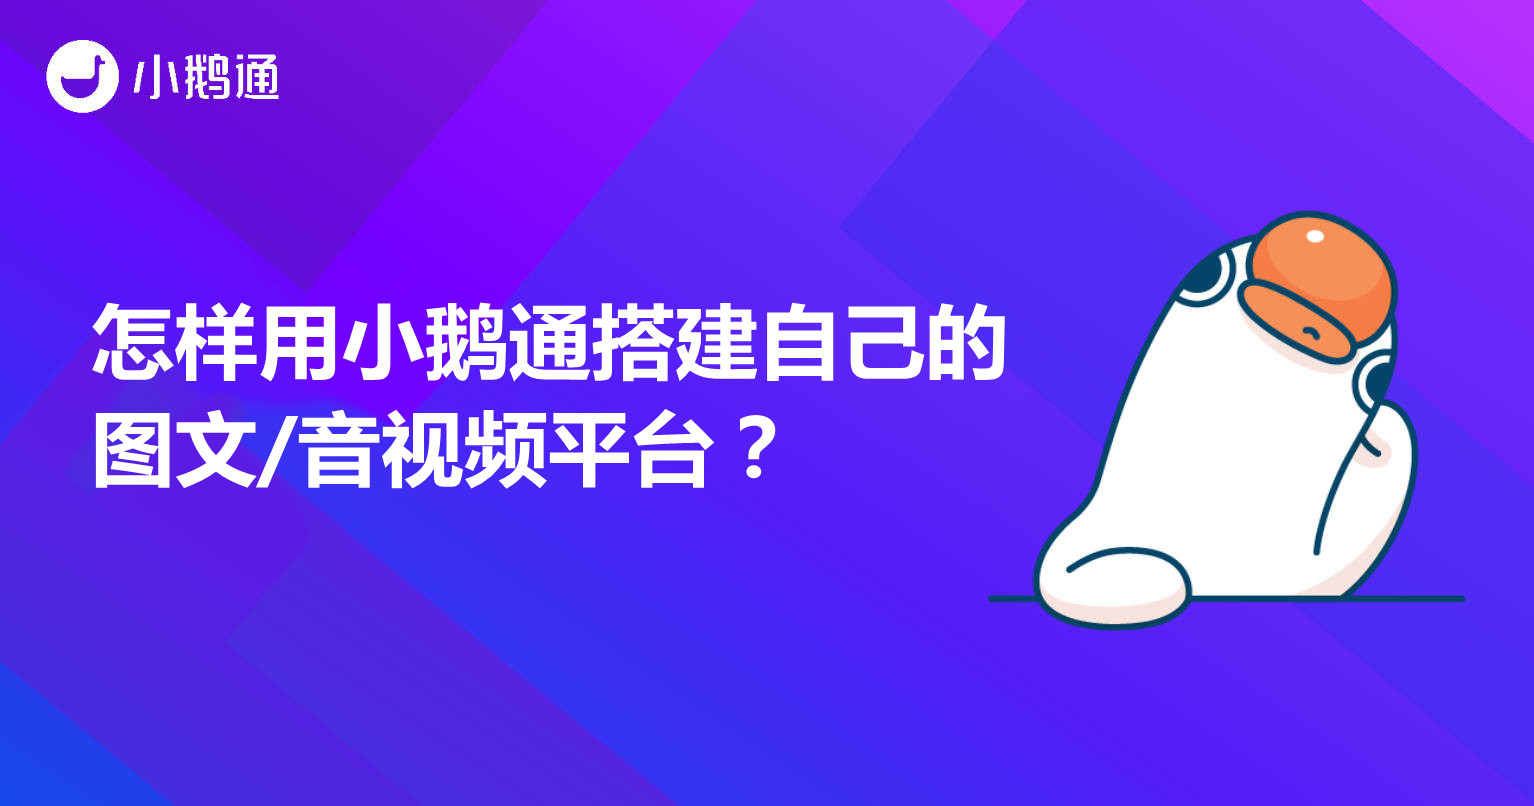 荣昌怎样用小鹅通搭建自己的图文/音视频平台？